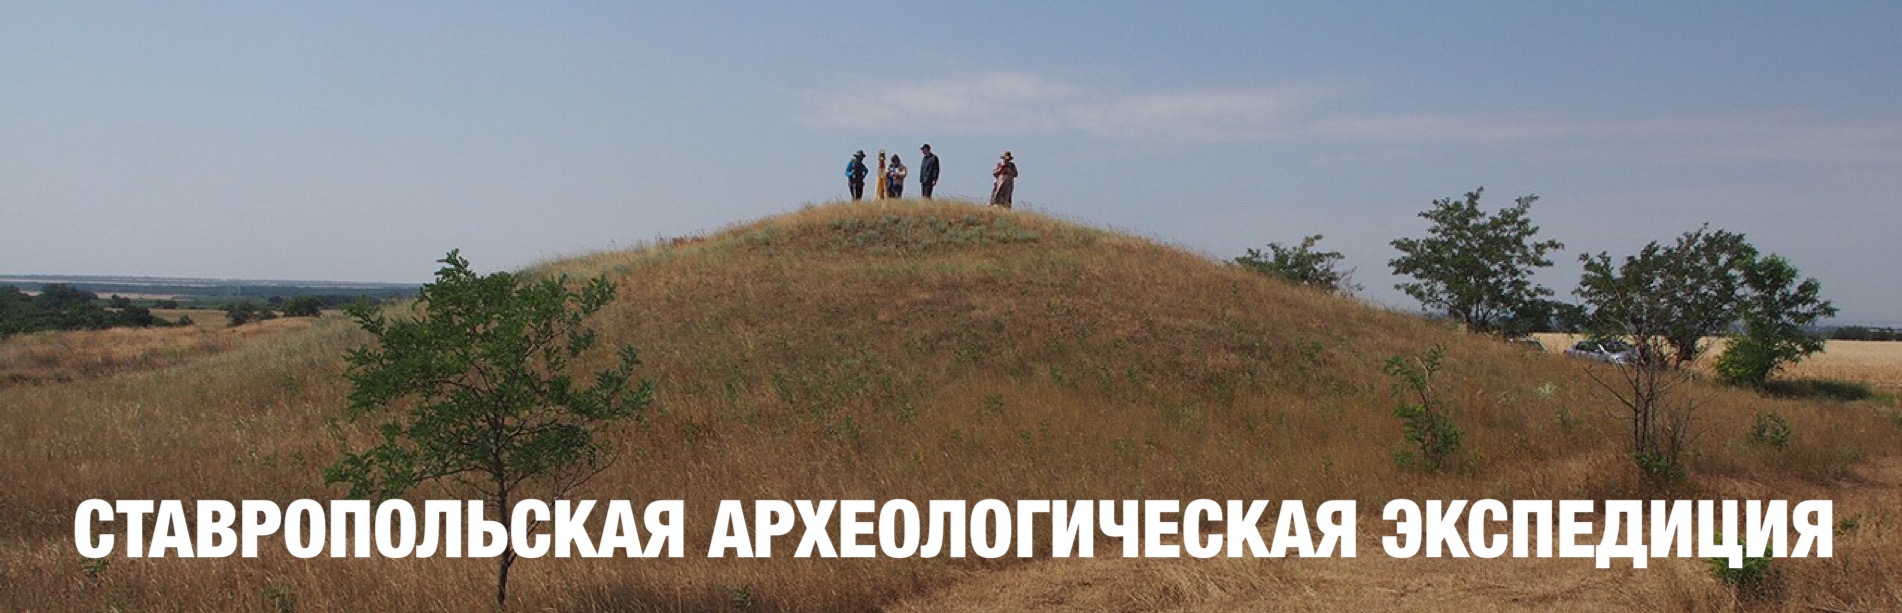 Работы Ставропольской экспедиции в полевом сезоне 2019 года